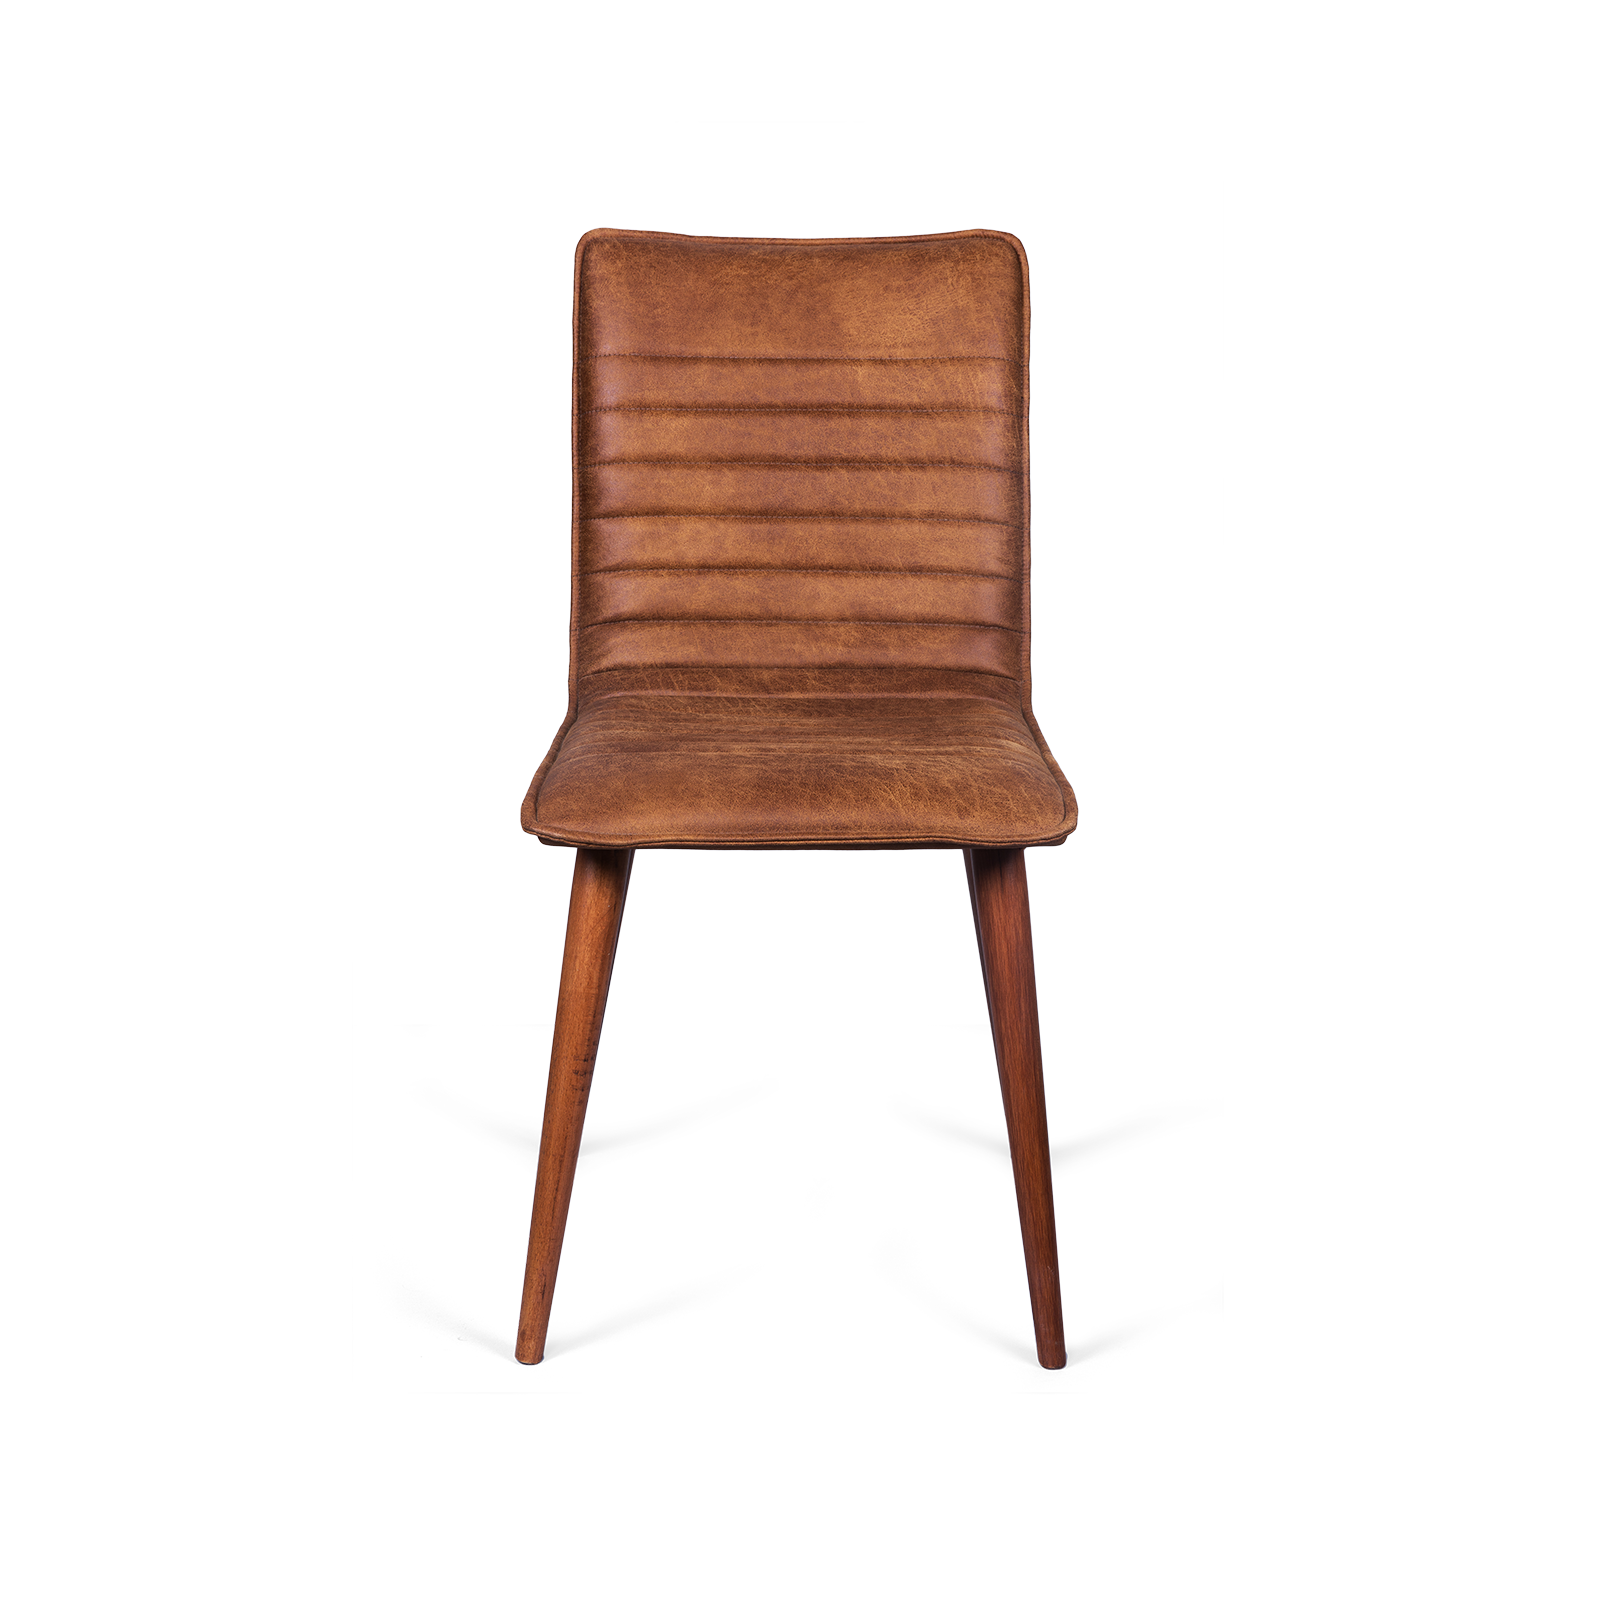 Купить стулья коричневые. Libano 2 DC 332 стул коричневый (037). Кресло Mobilsedia Luna 1011-c. Стул из натуральной кожи TC-73492. Стул Sigma кожаный коричневый.